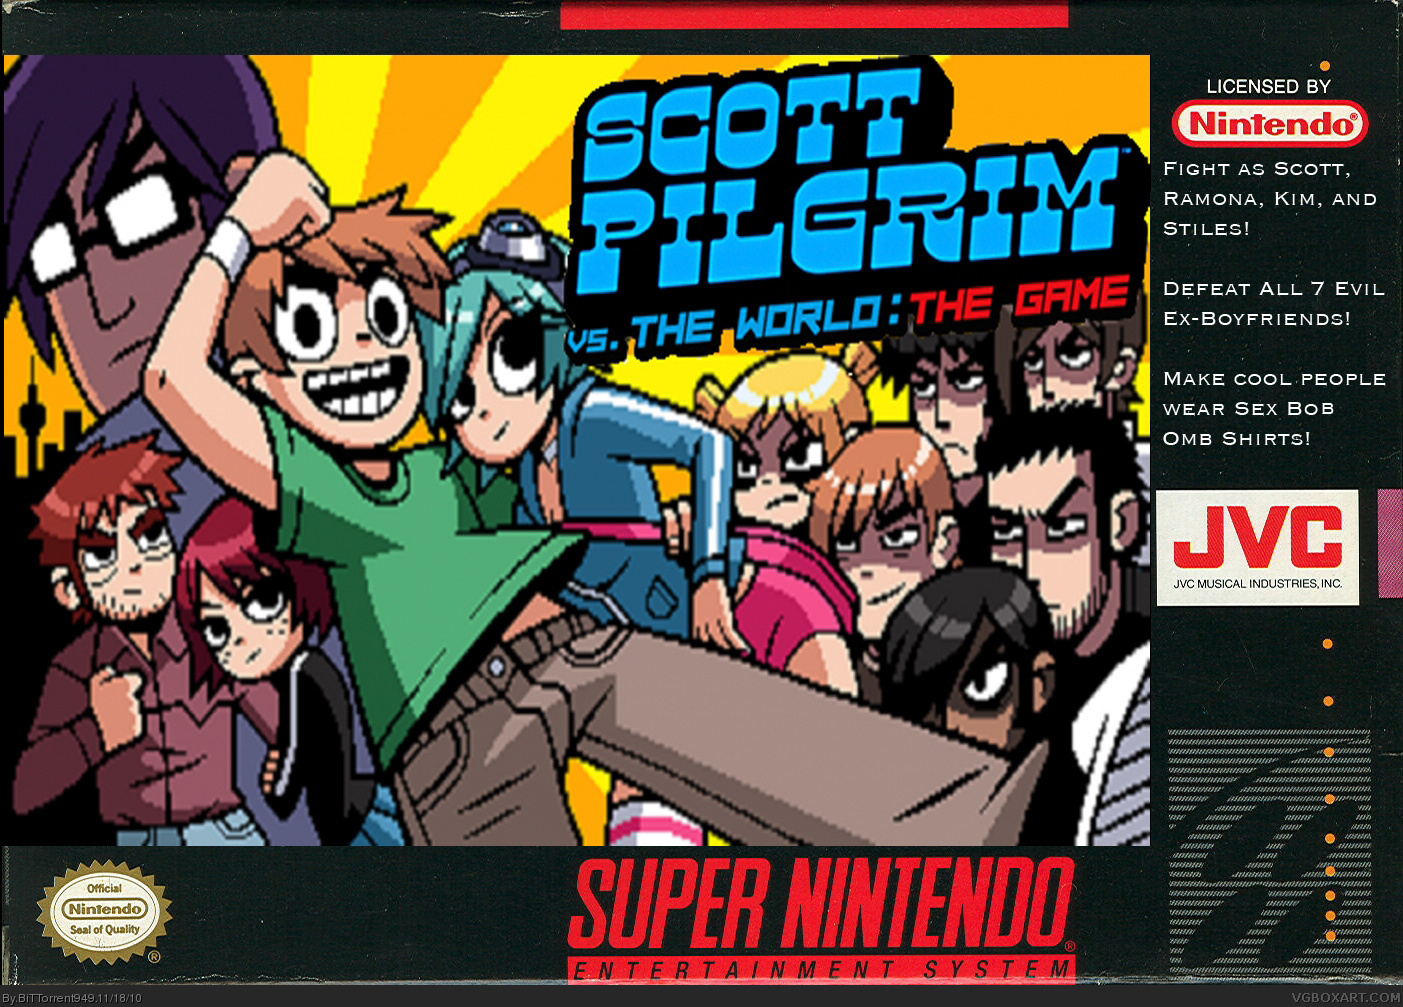 Scott Pilgrim vs. The World box cover